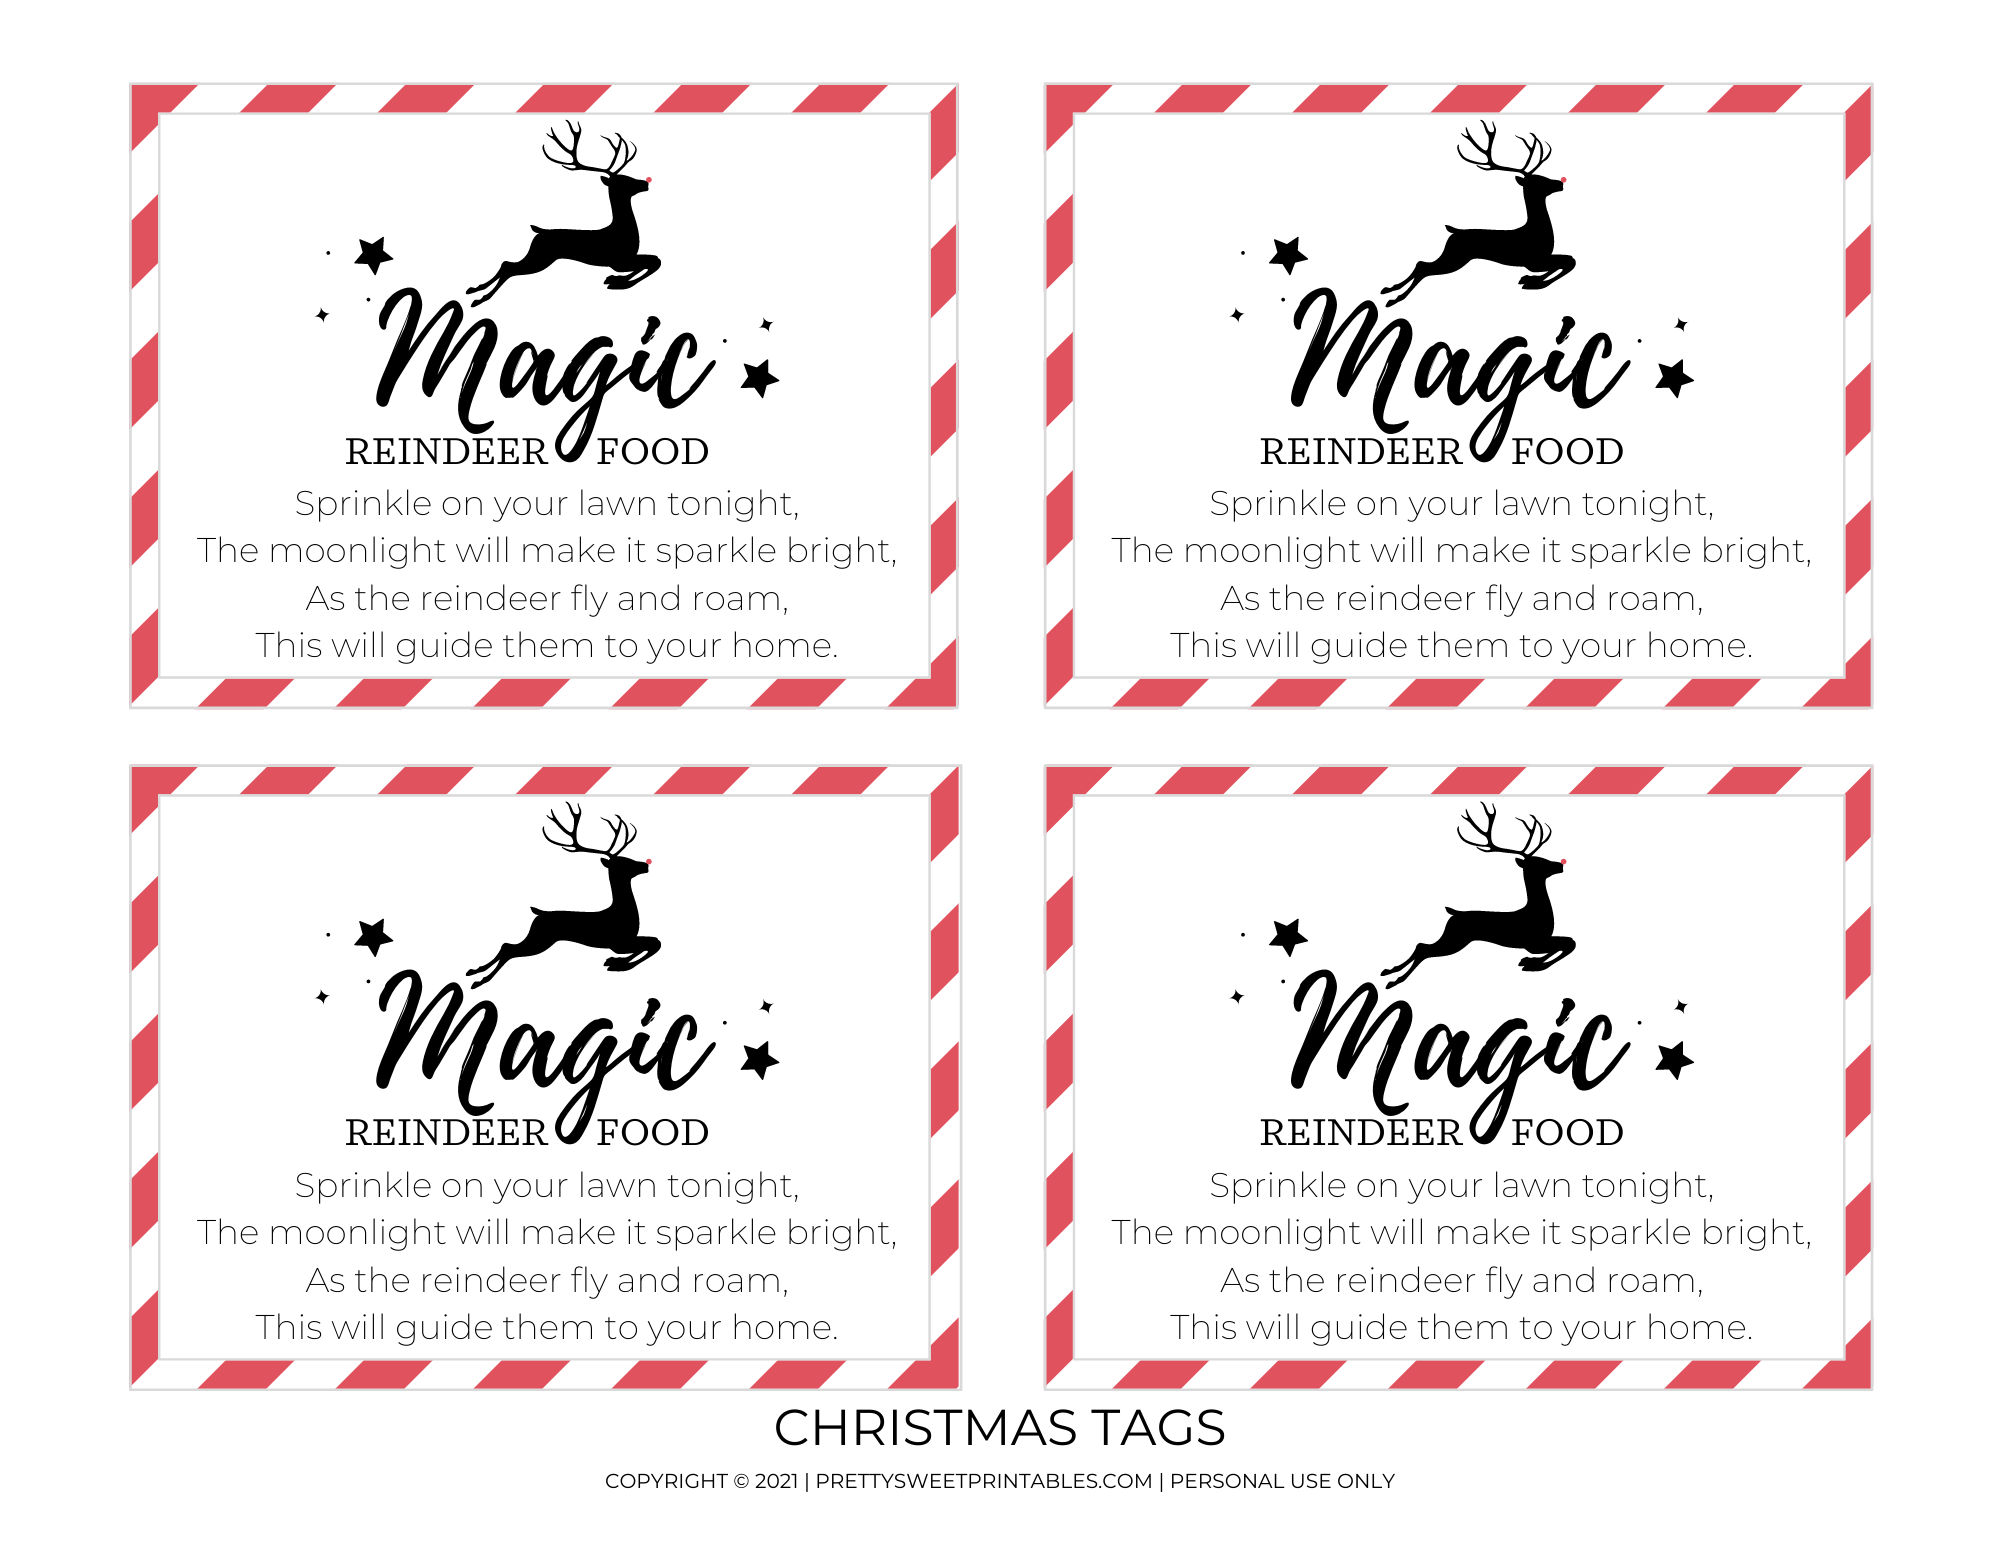 magic-reindeer-food-tags-free-printable-pretty-sweet